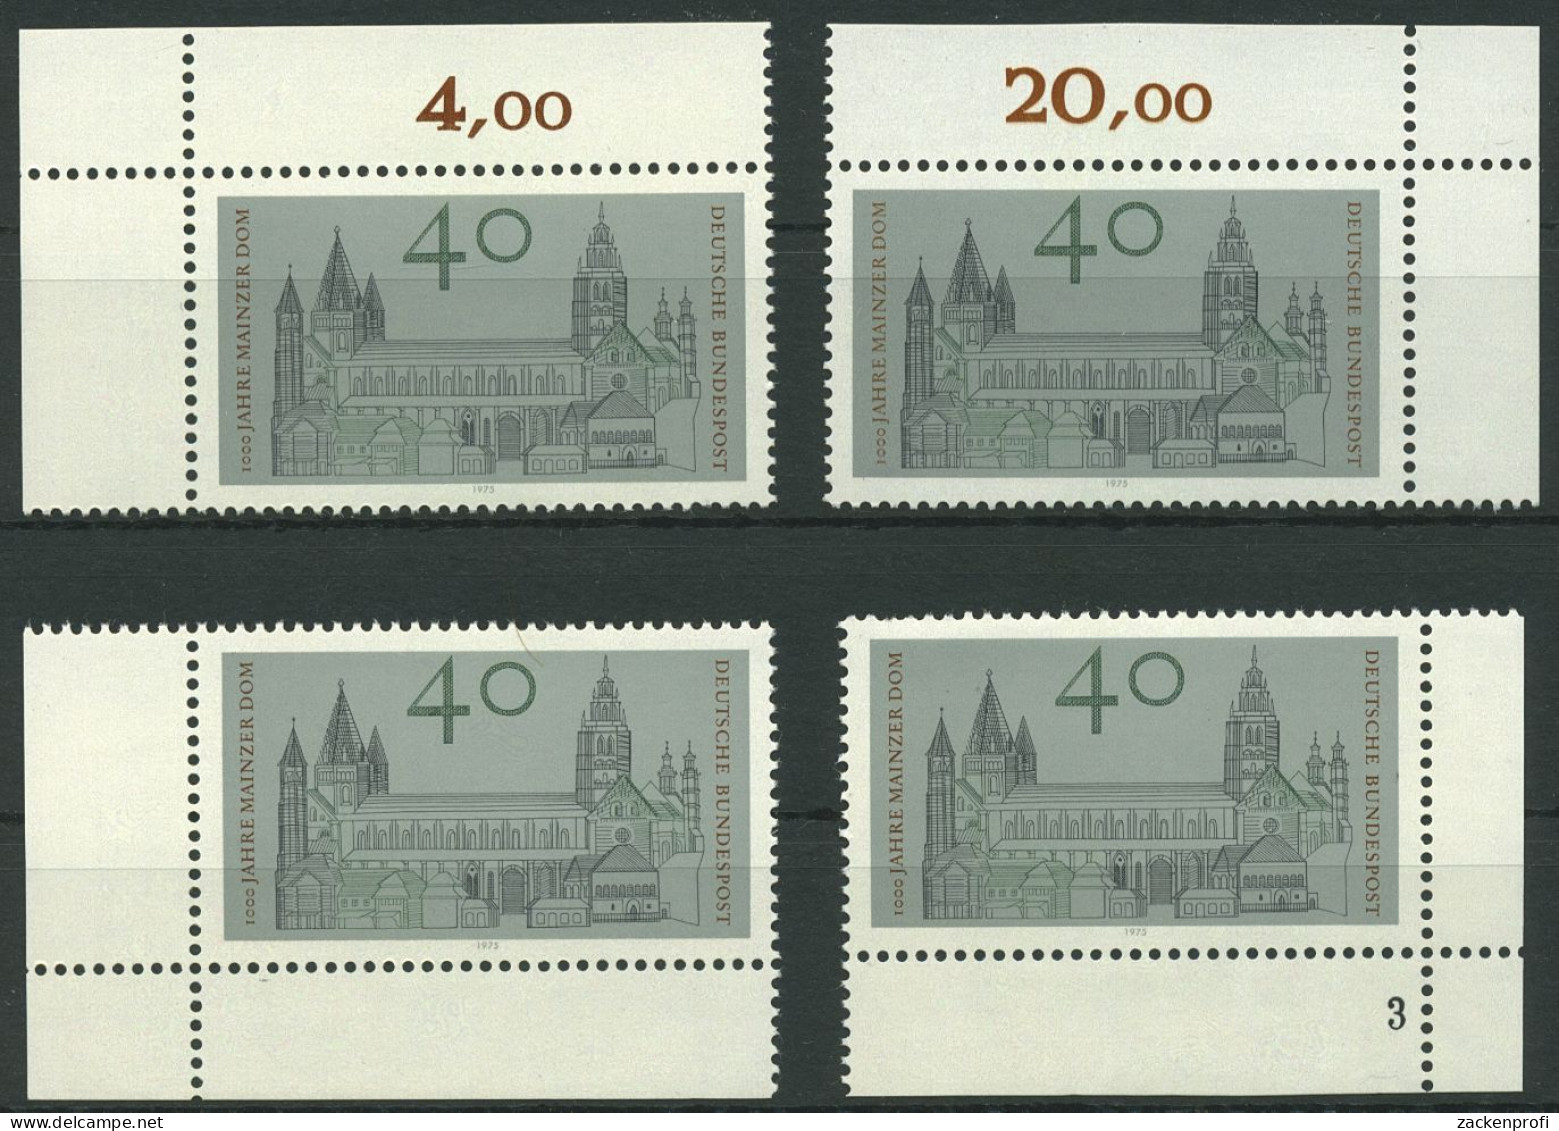 Bund 1975 Mainzer Dom 845 Alle 4 Ecken Postfrisch (E933) - Neufs